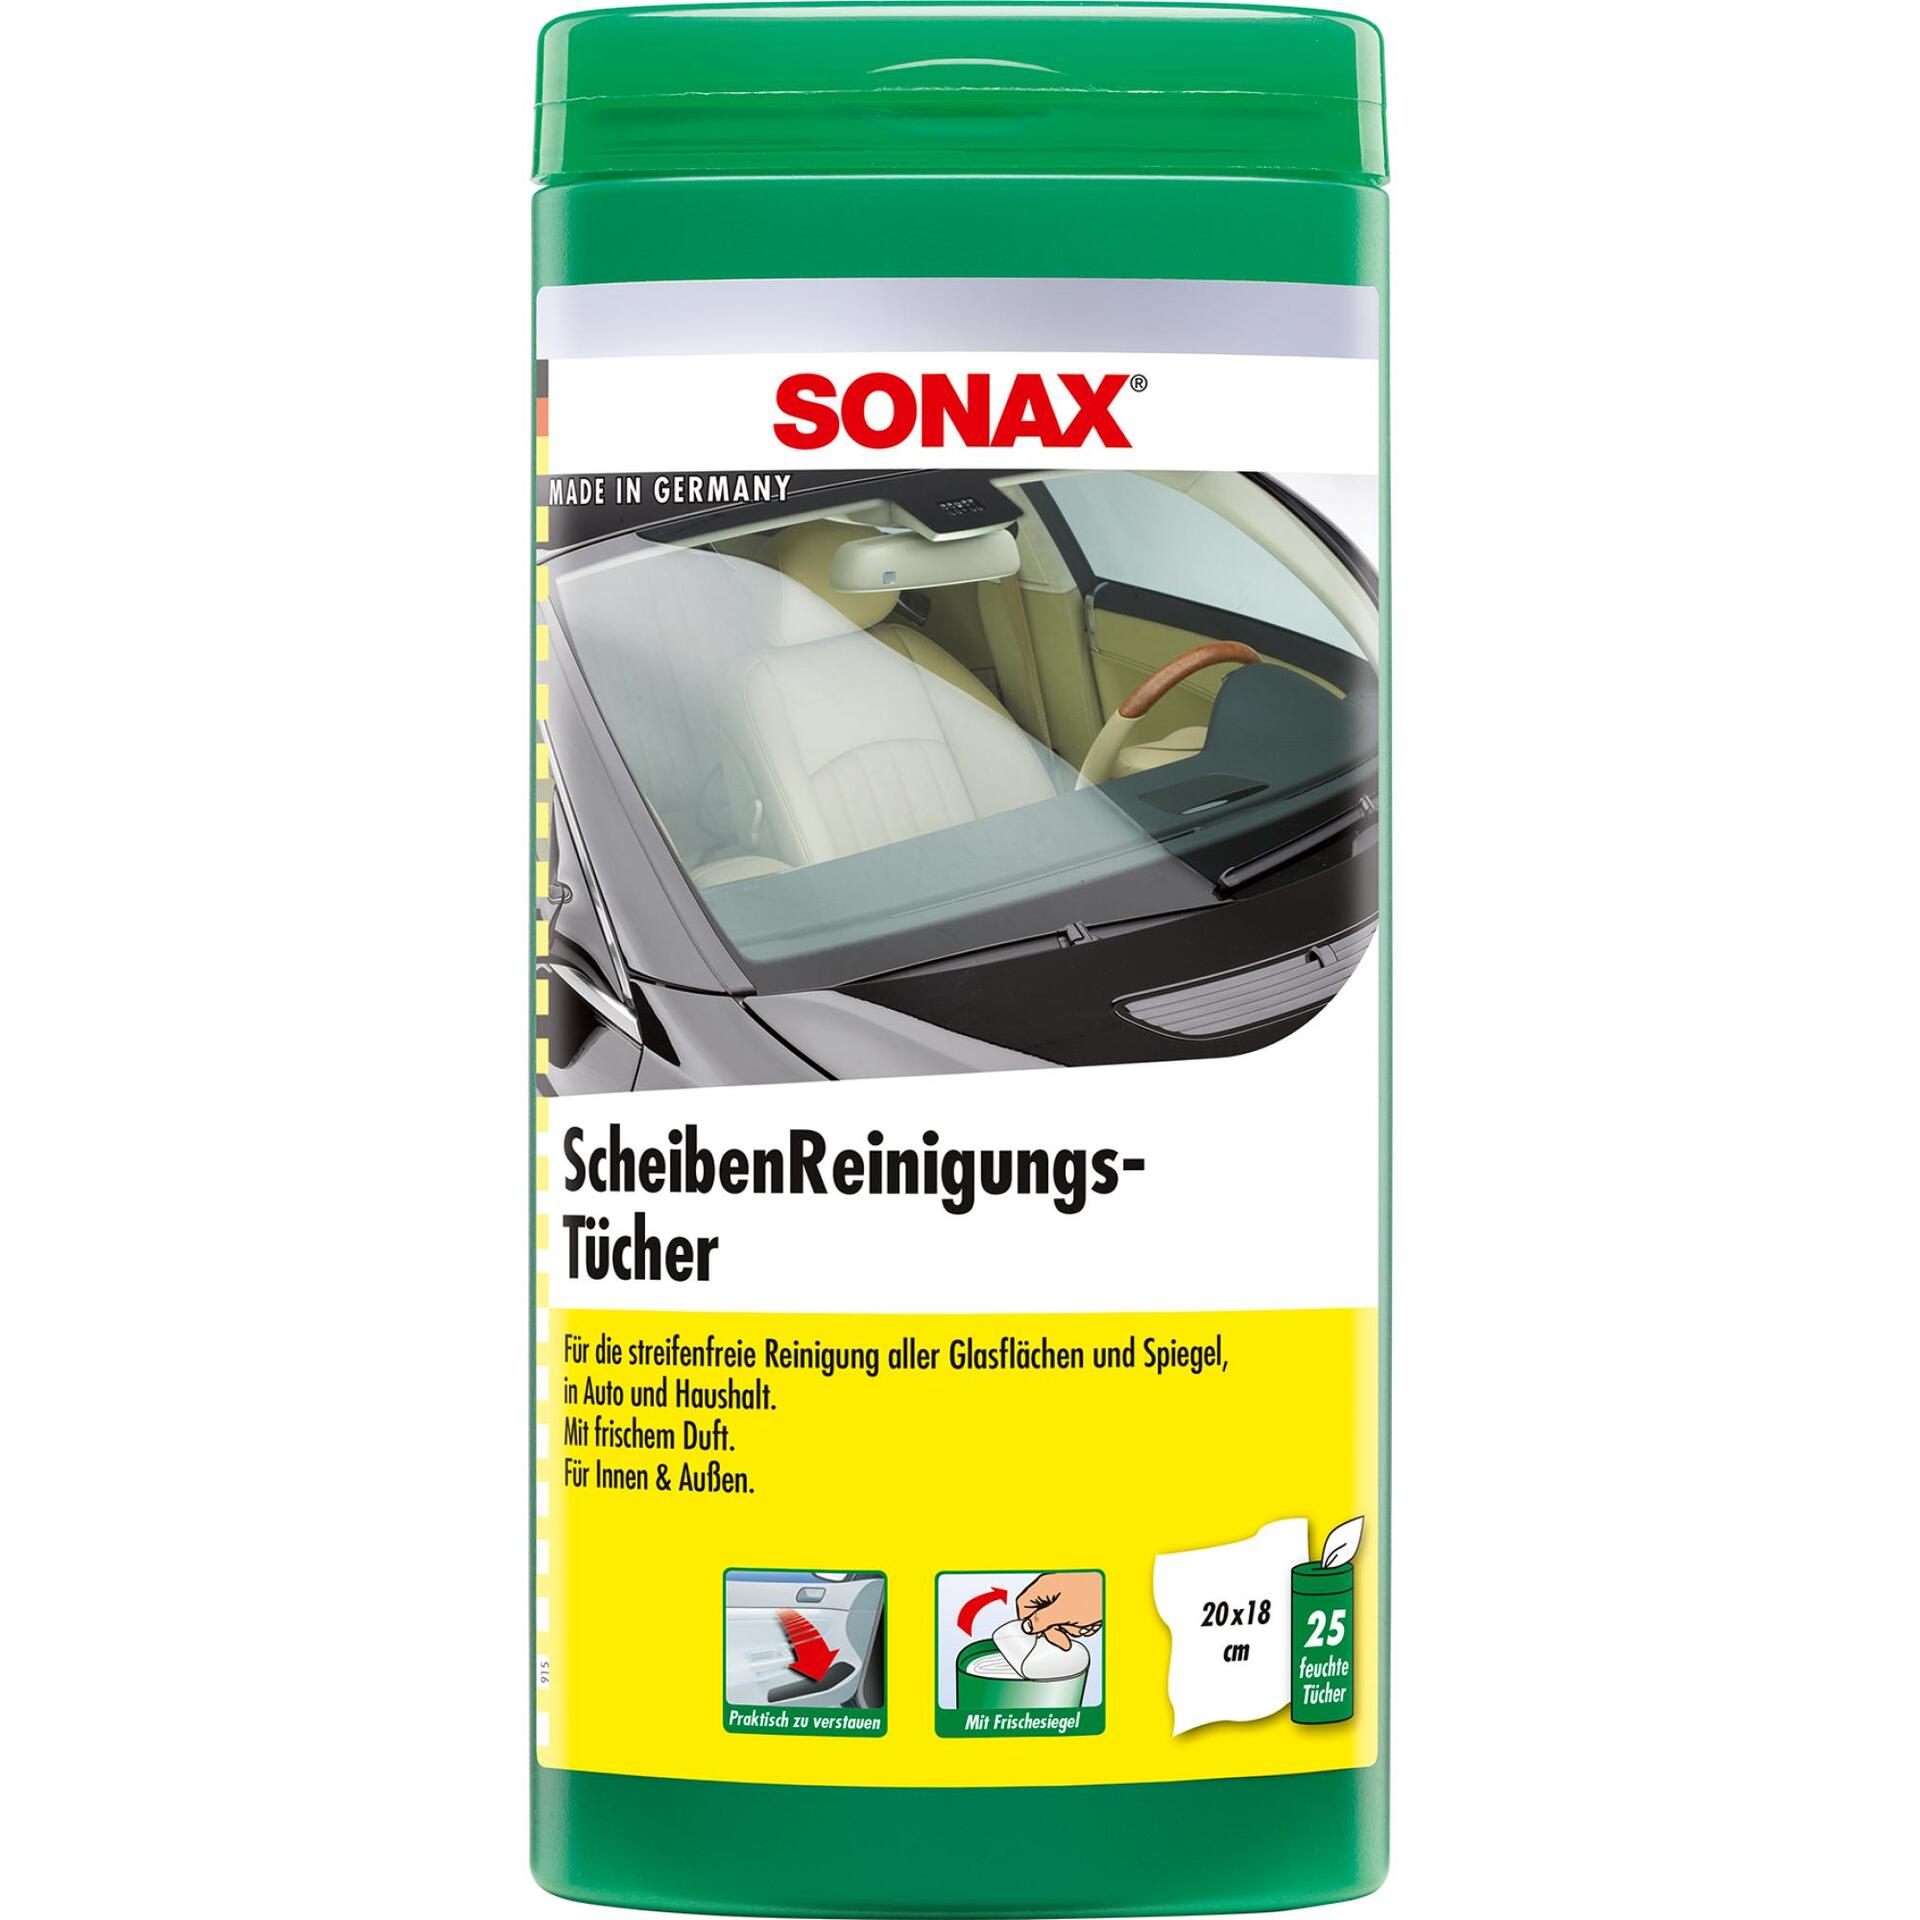 SONAX Scheiben-Reinigungs-Tücher